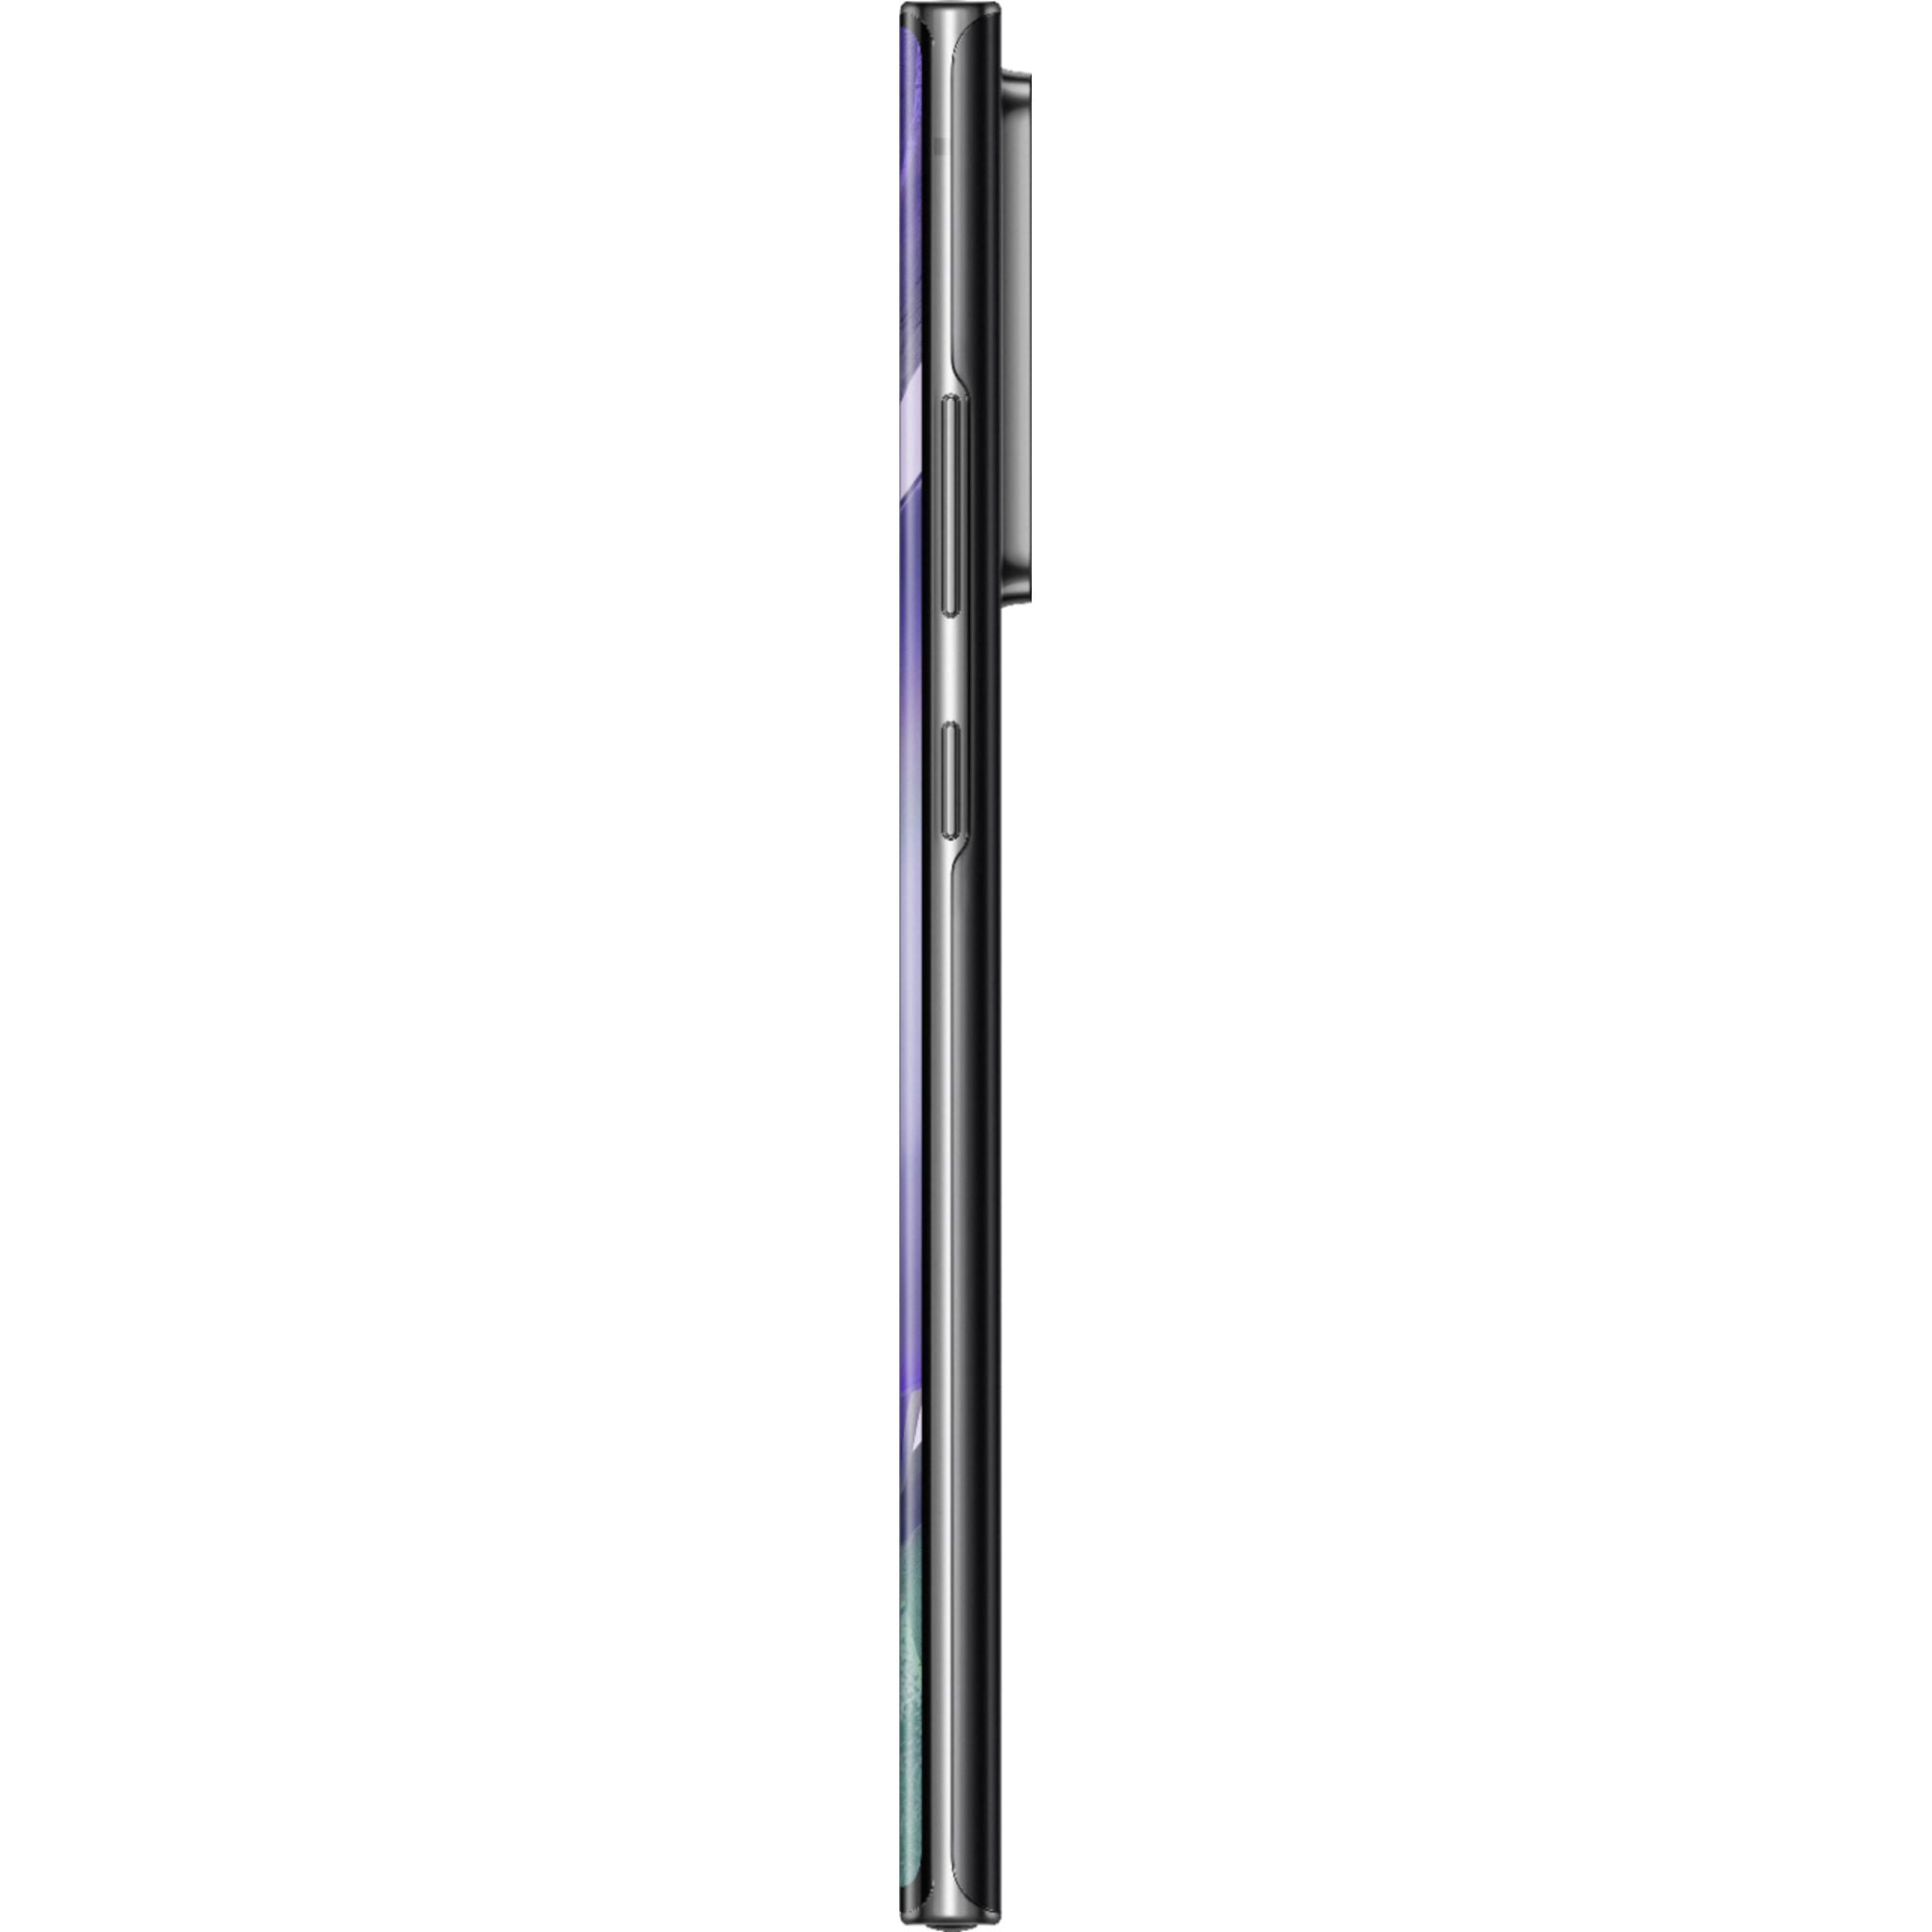 Samsung Galaxy Note20 Ultra N985F 256GB Hybrid Dual SIM Unlocked